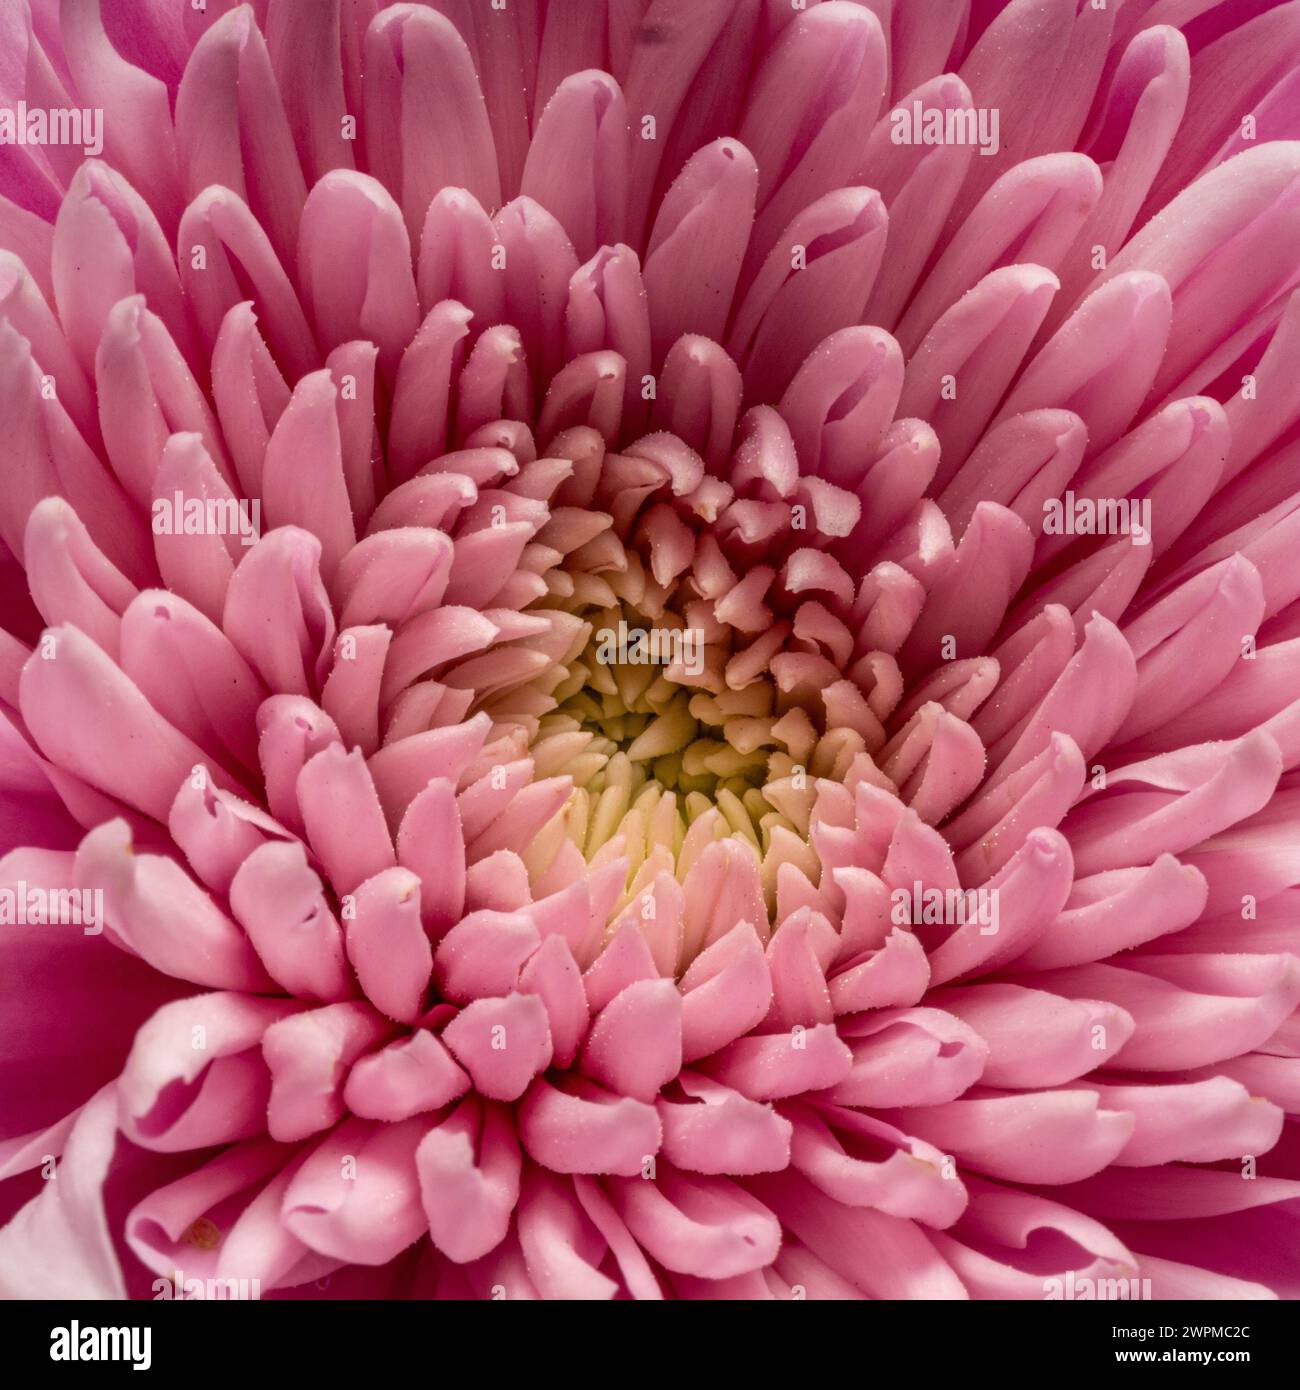 Gros plan des pétales centraux d'une fleur de chrysanthème rose Banque D'Images